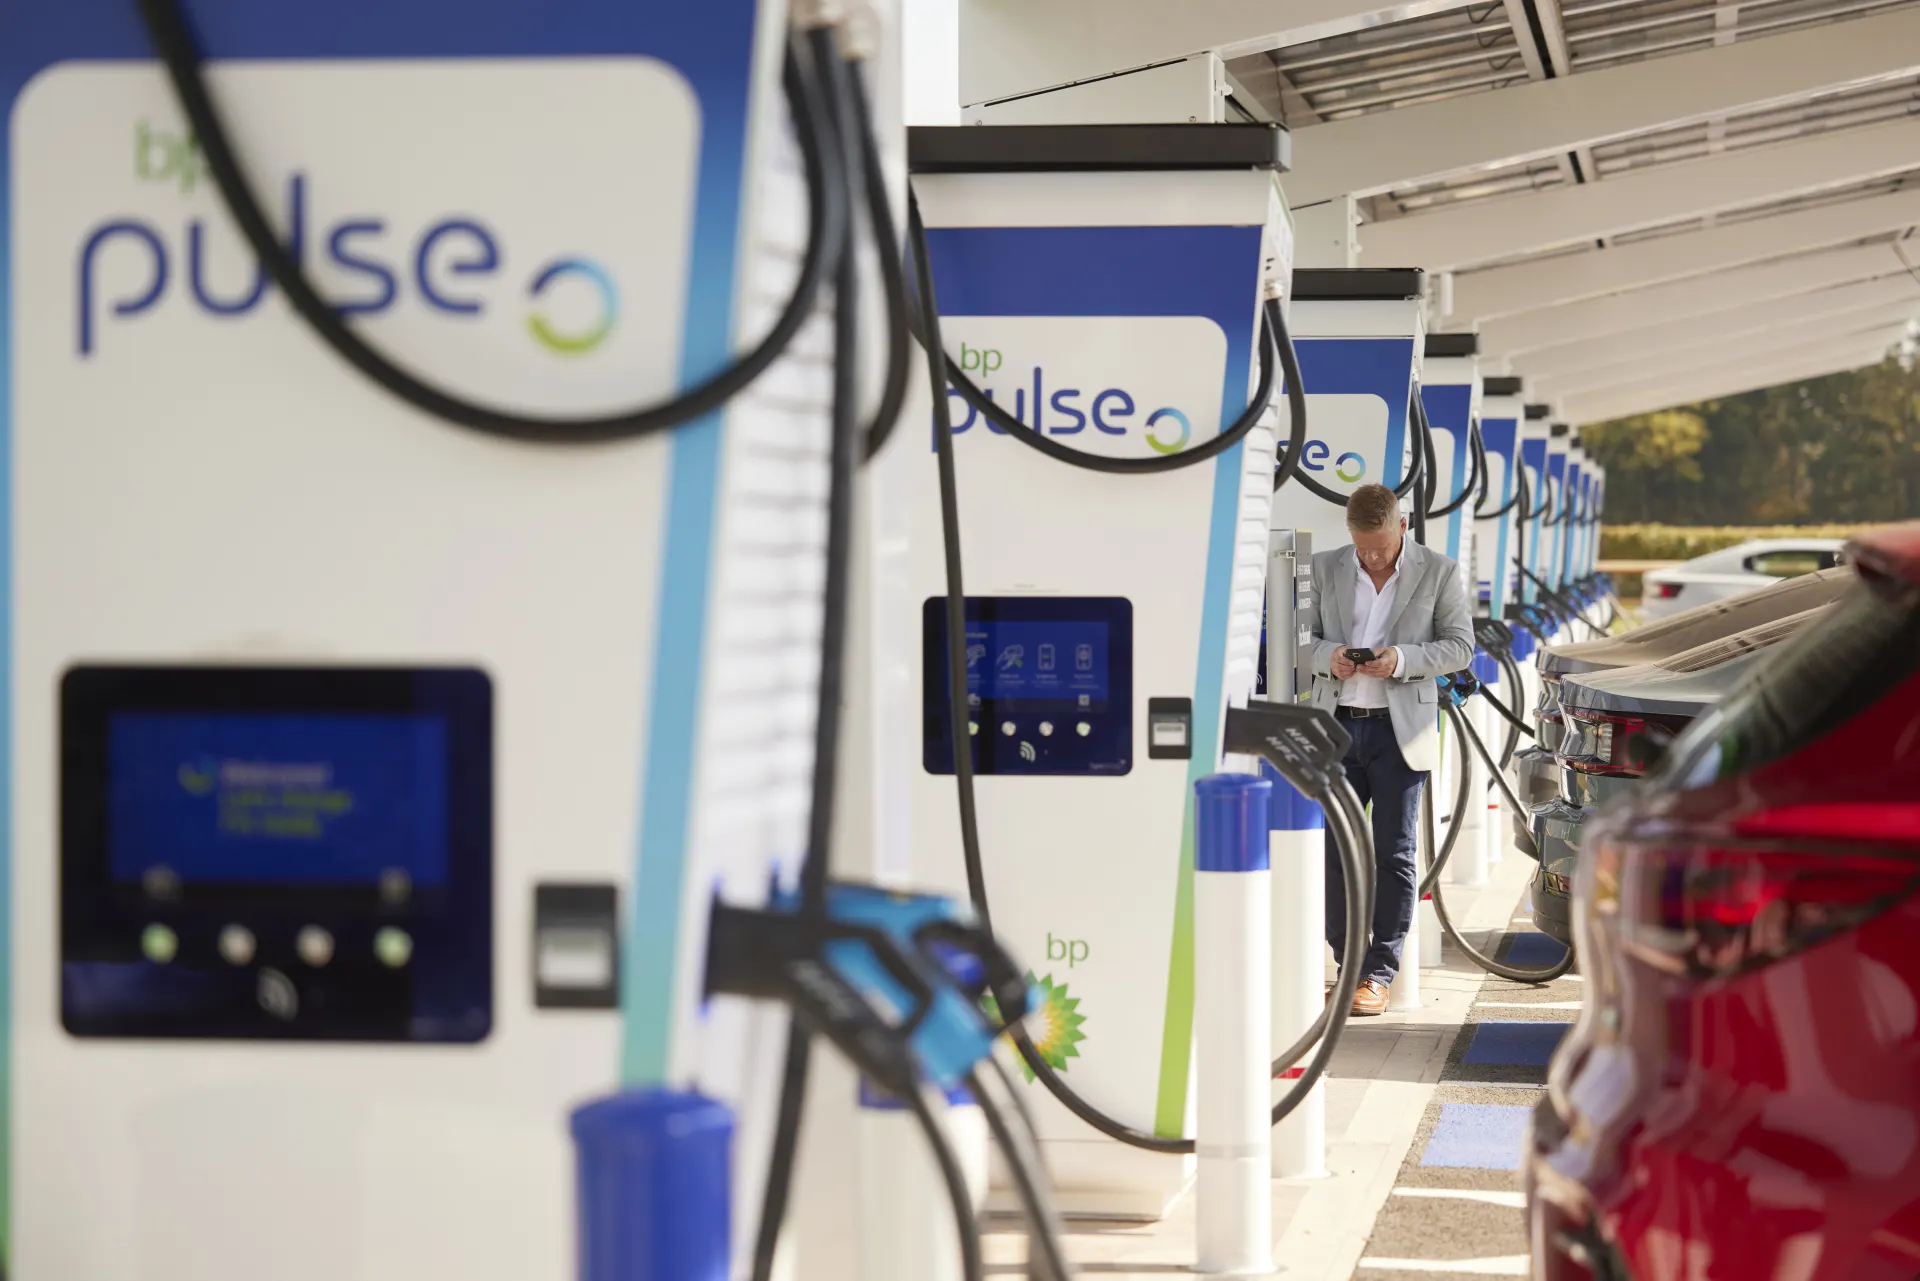 bp pulse is boosting EV charging in the Midlands